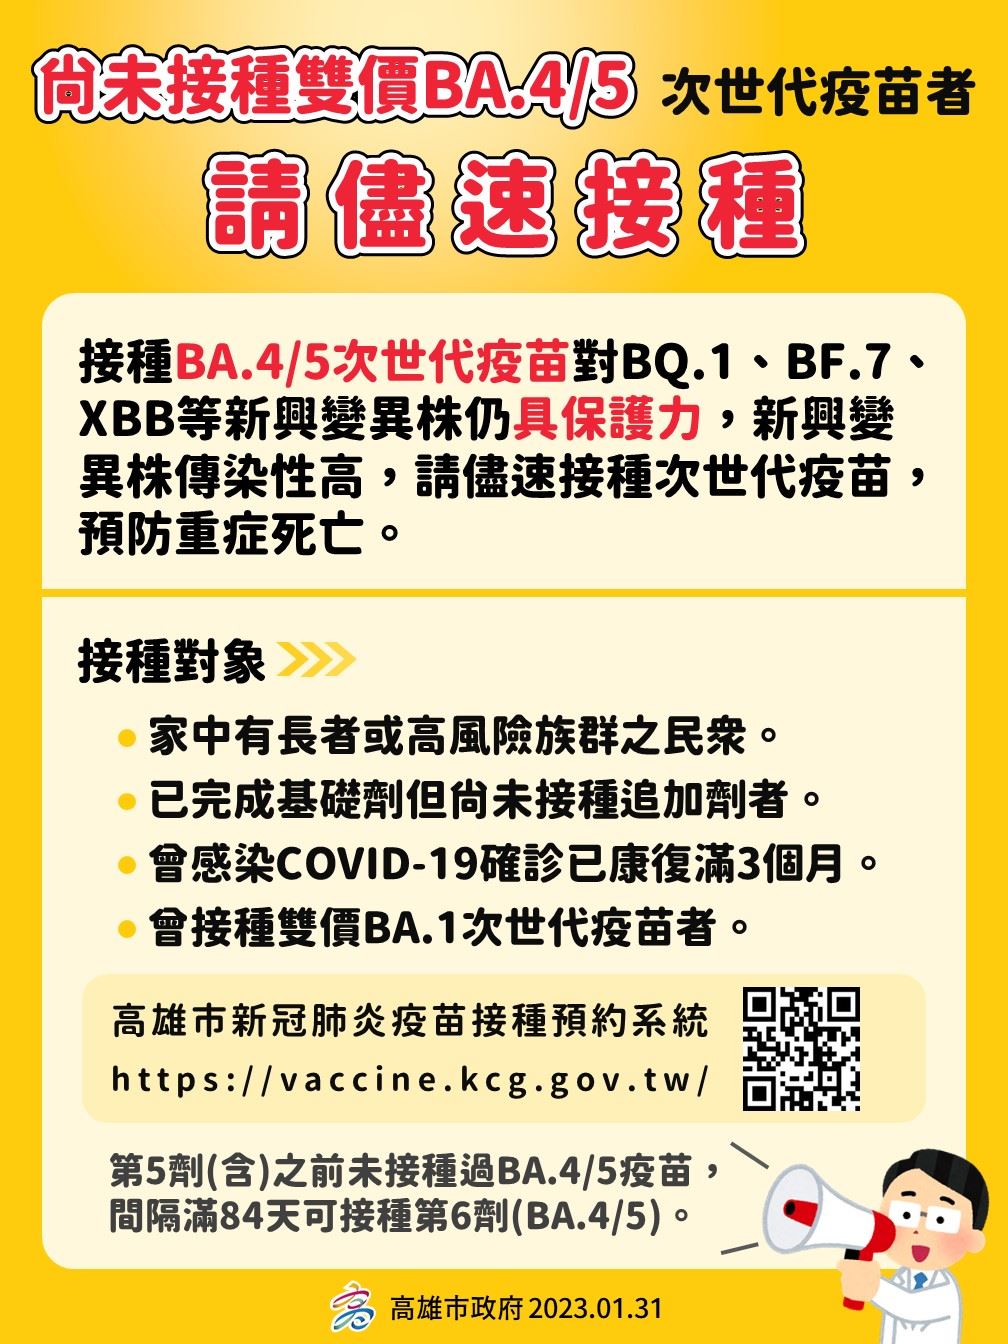 陳其邁市長提醒接種過BA.1次世代疫苗者 滿三個月後可接種「BA.4/BA.5次世代疫苗」 高風險確診者應遵從醫囑服用抗病毒藥物  降低染疫後重症死亡風險